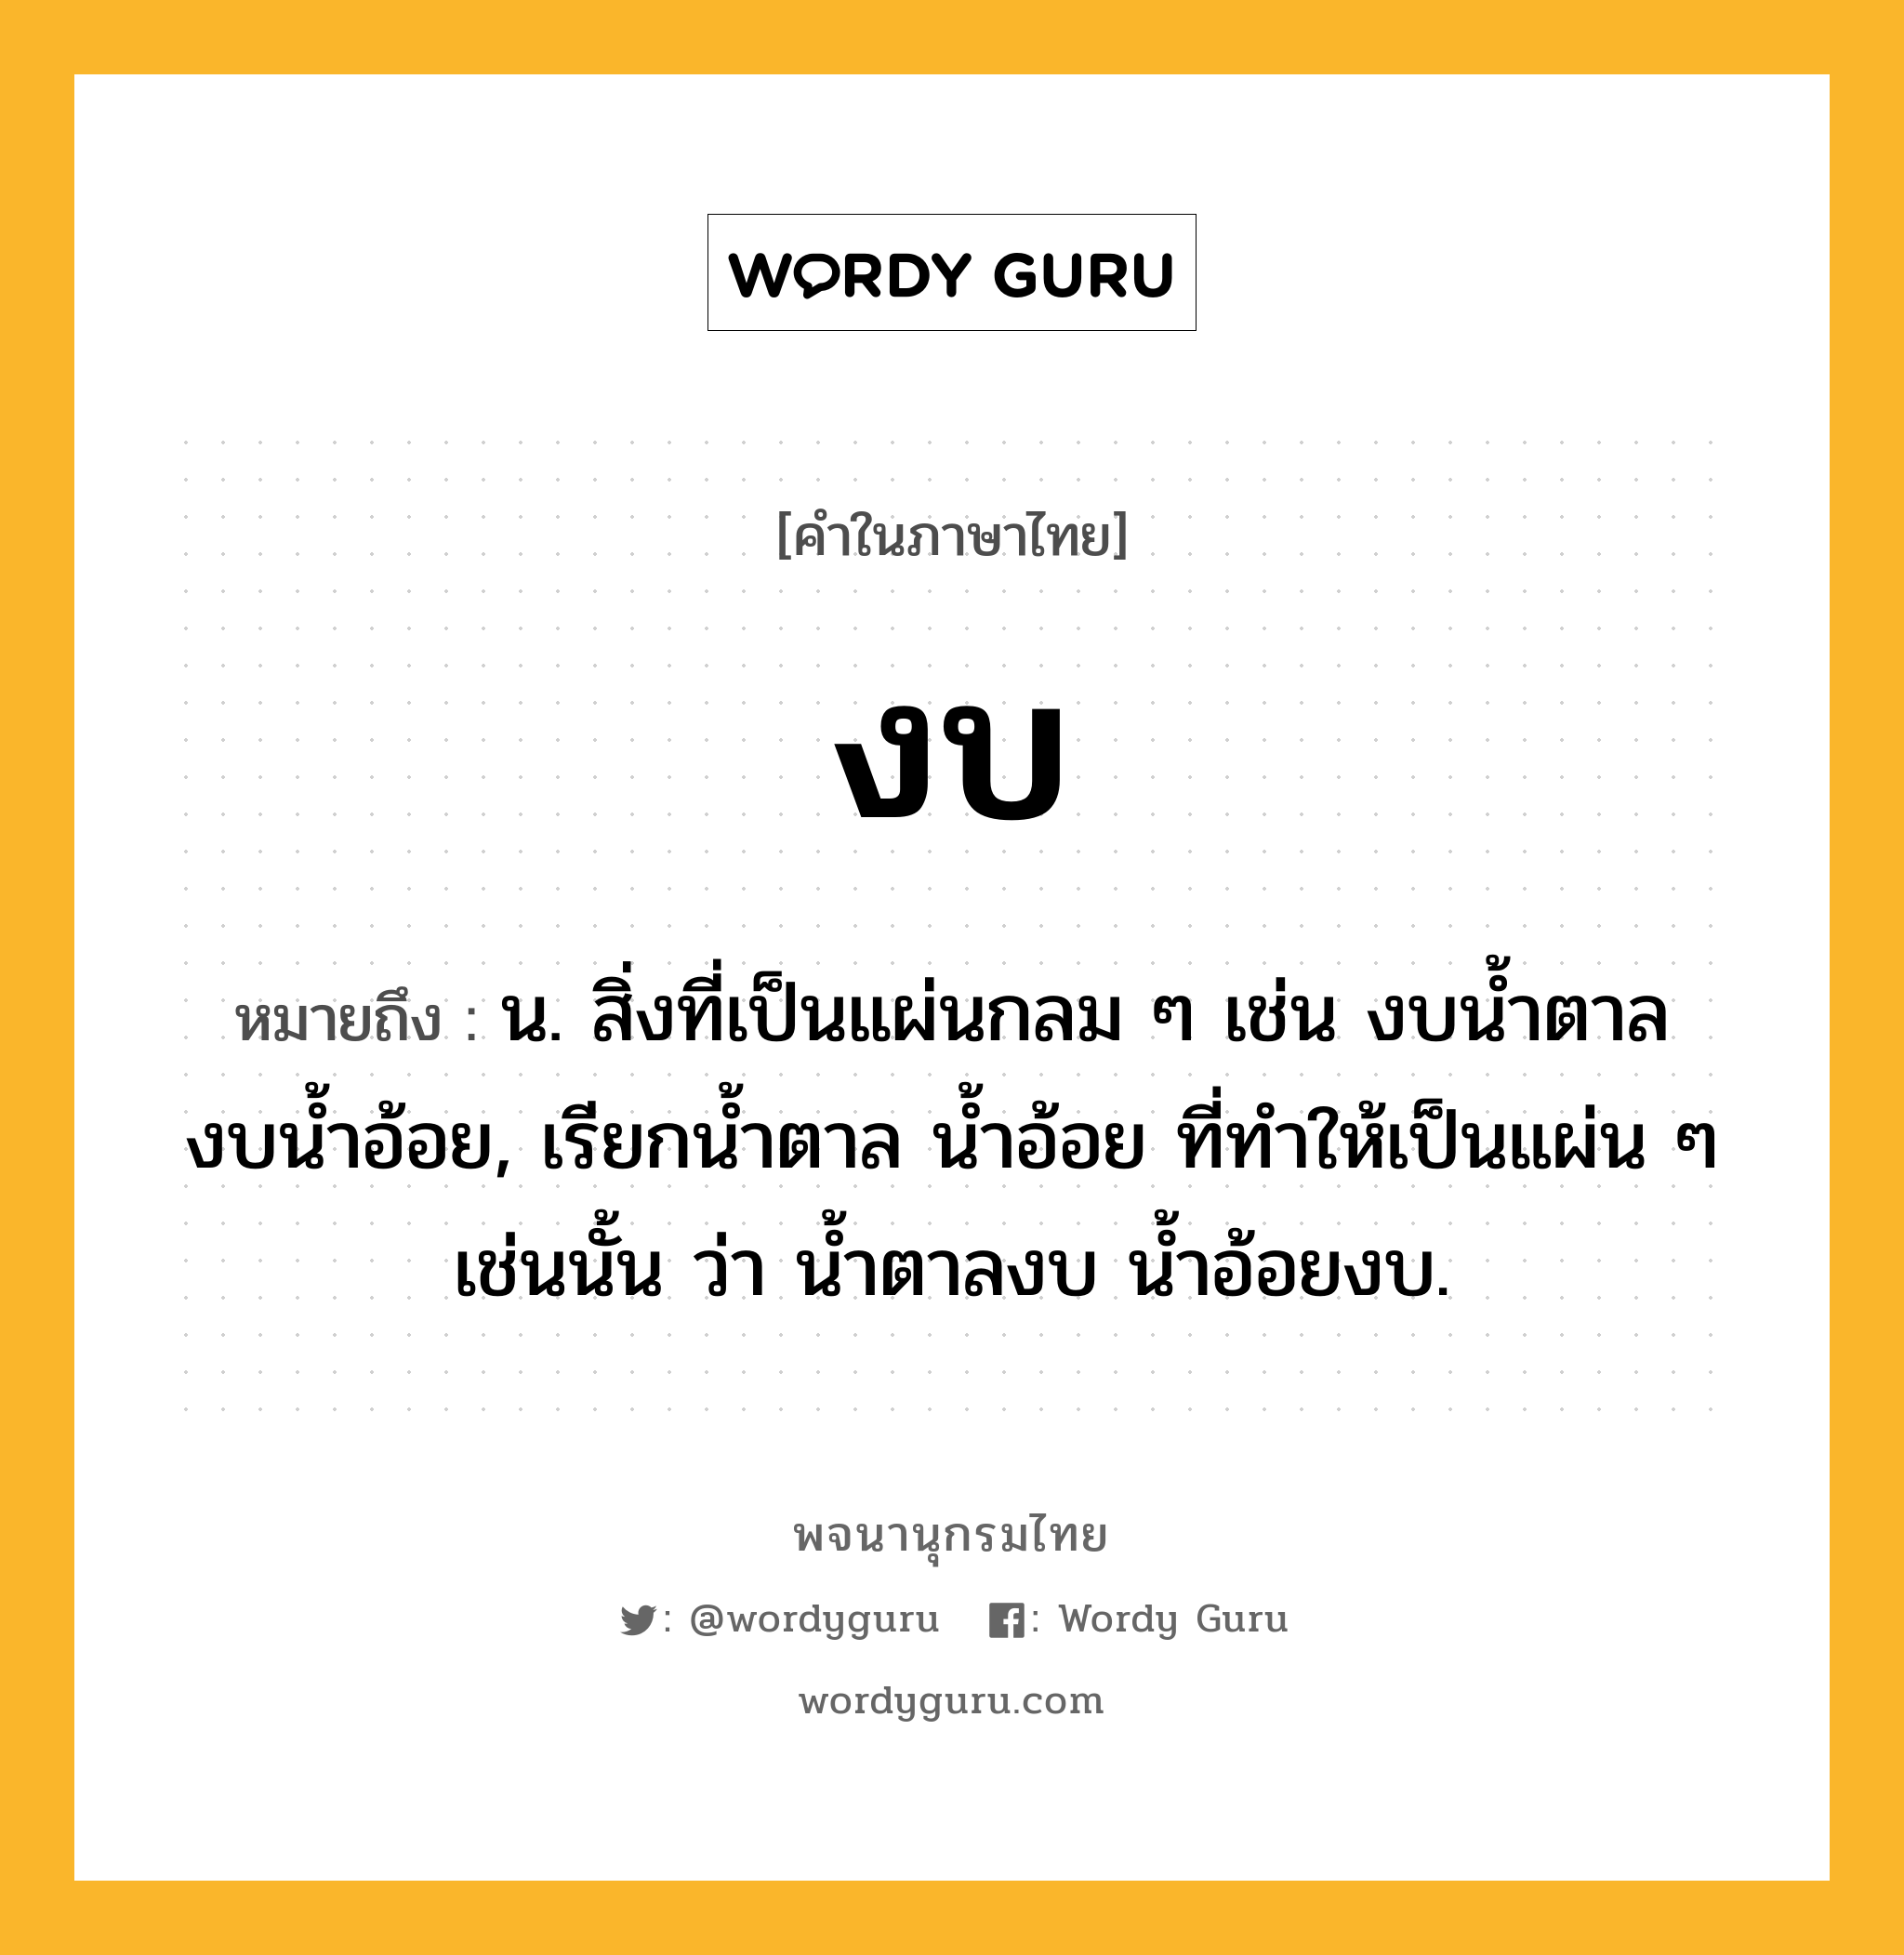 งบ หมายถึงอะไร?, คำในภาษาไทย งบ หมายถึง น. สิ่งที่เป็นแผ่นกลม ๆ เช่น งบนํ้าตาล งบนํ้าอ้อย, เรียกนํ้าตาล นํ้าอ้อย ที่ทําให้เป็นแผ่น ๆ เช่นนั้น ว่า นํ้าตาลงบ นํ้าอ้อยงบ.